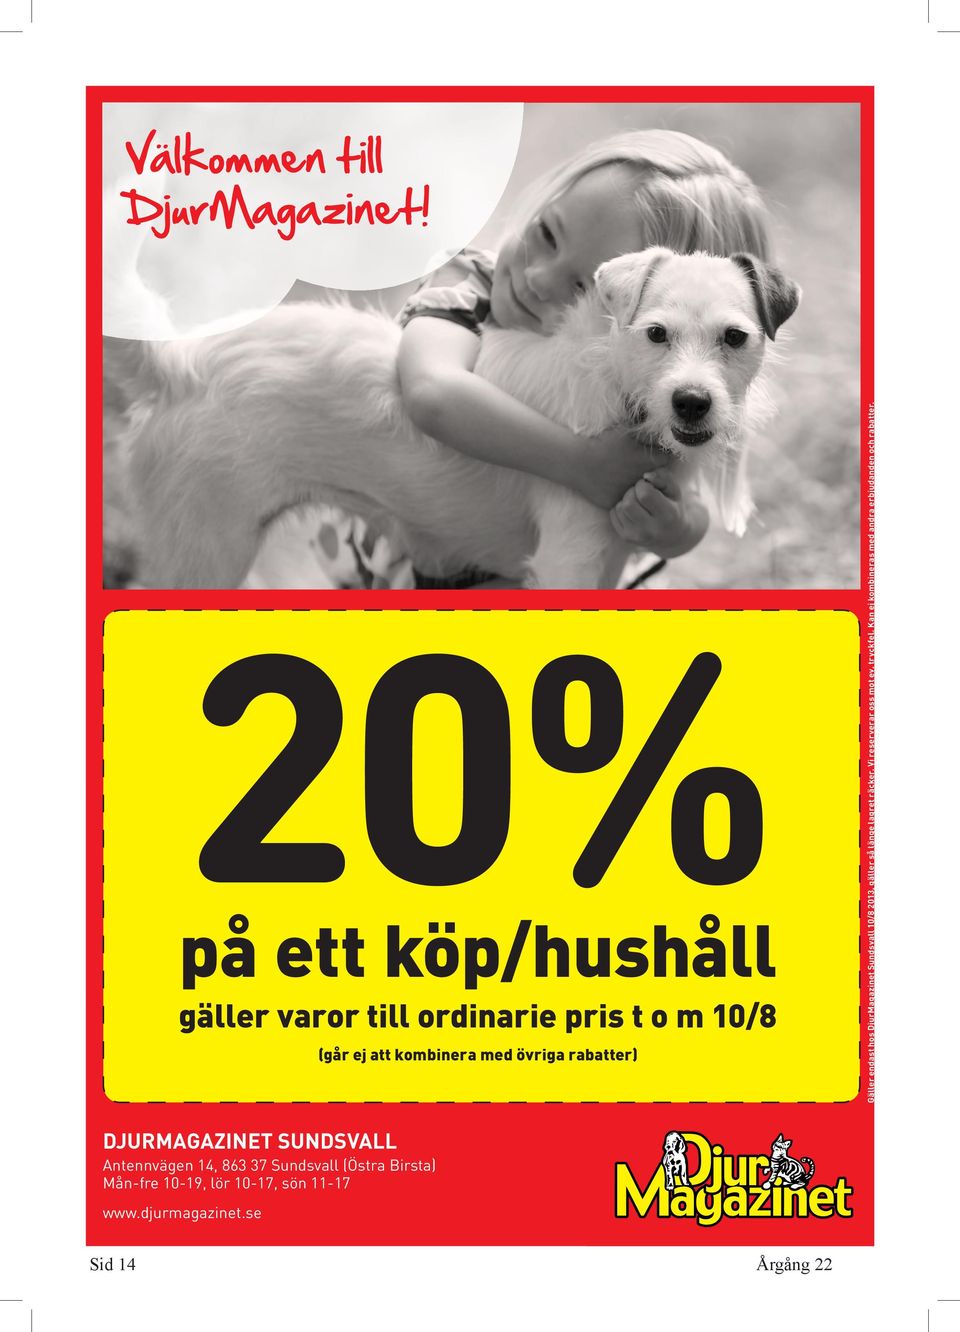 djurmagazinet.se Sid 14 Gäller endast hos DjurMagazinet Sundsvall 10/8 2013, gäller så länge lagret räcker.